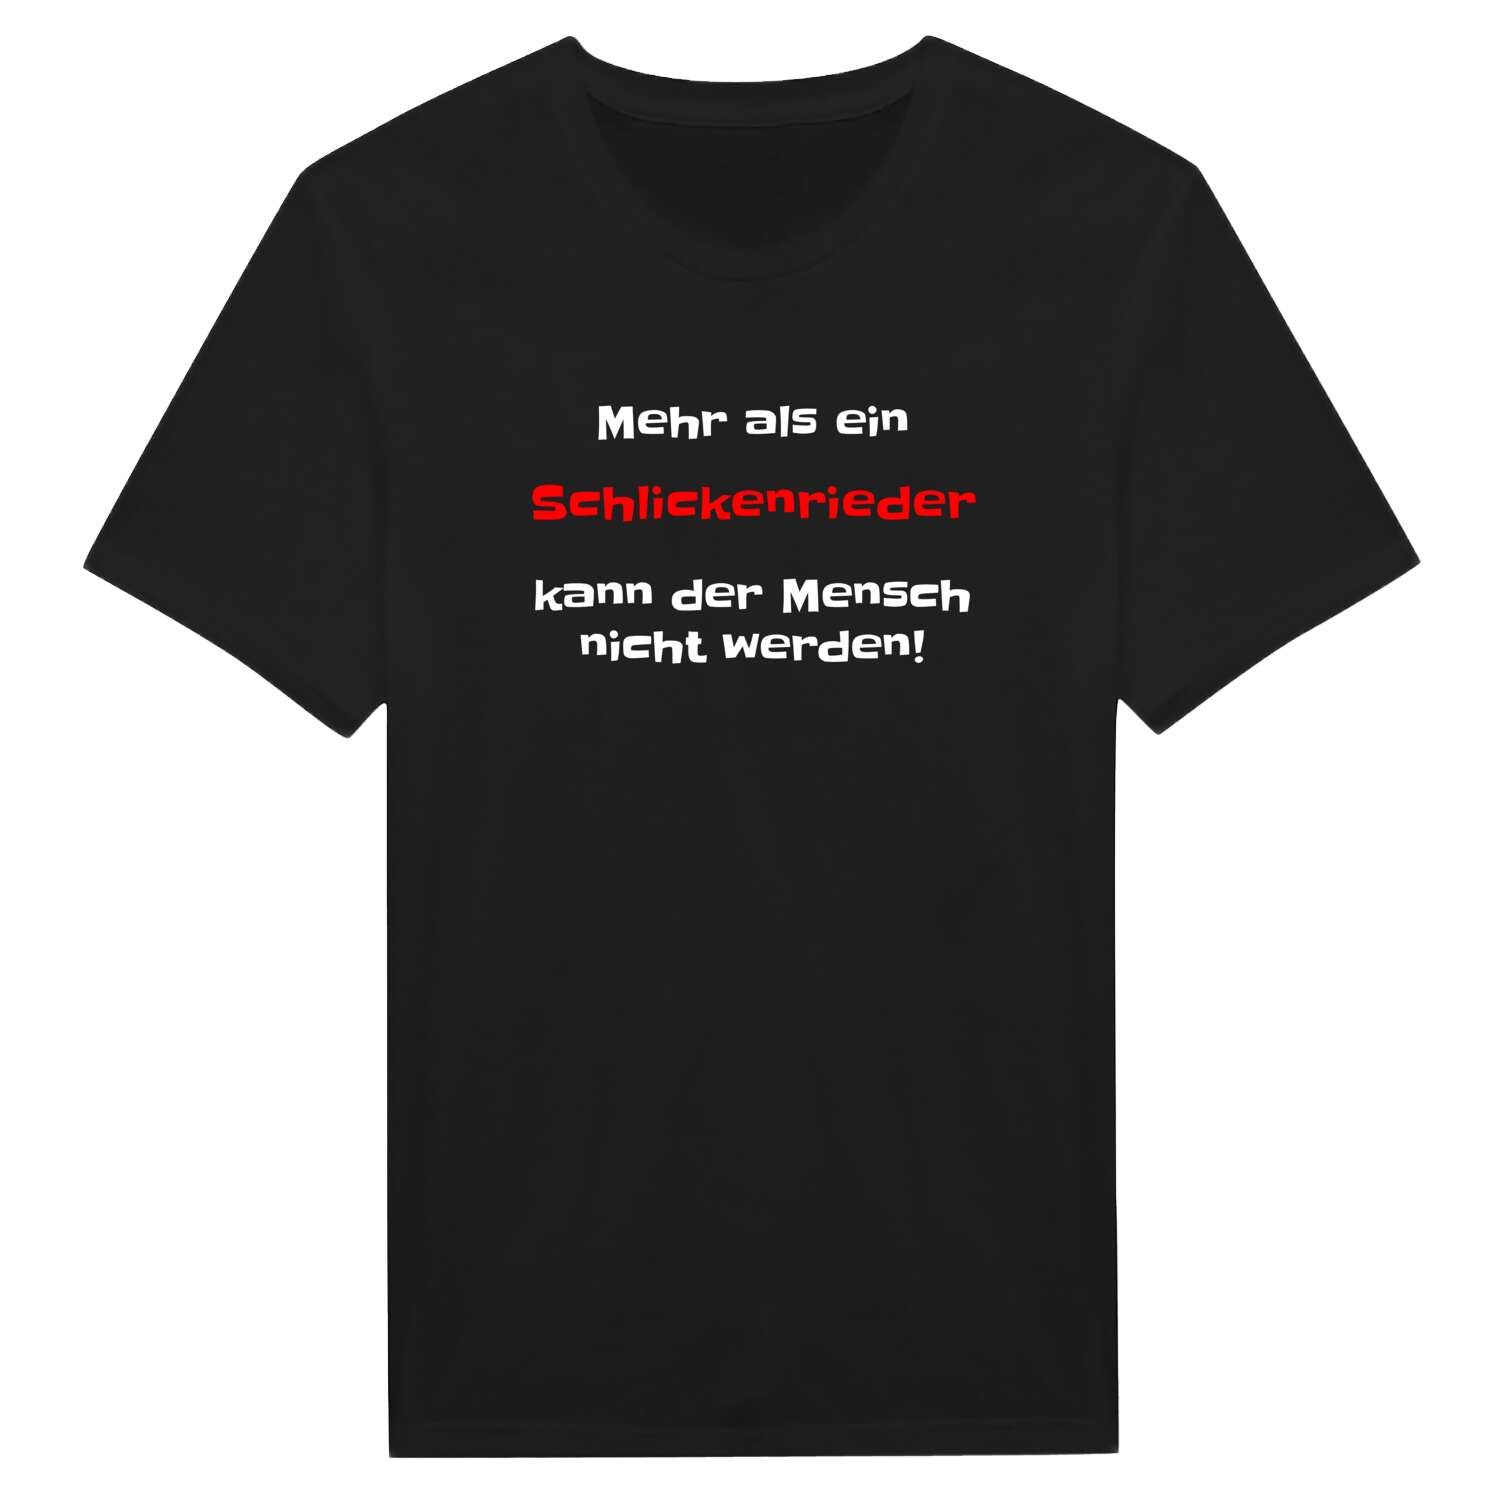 Schlickenried T-Shirt »Mehr als ein«